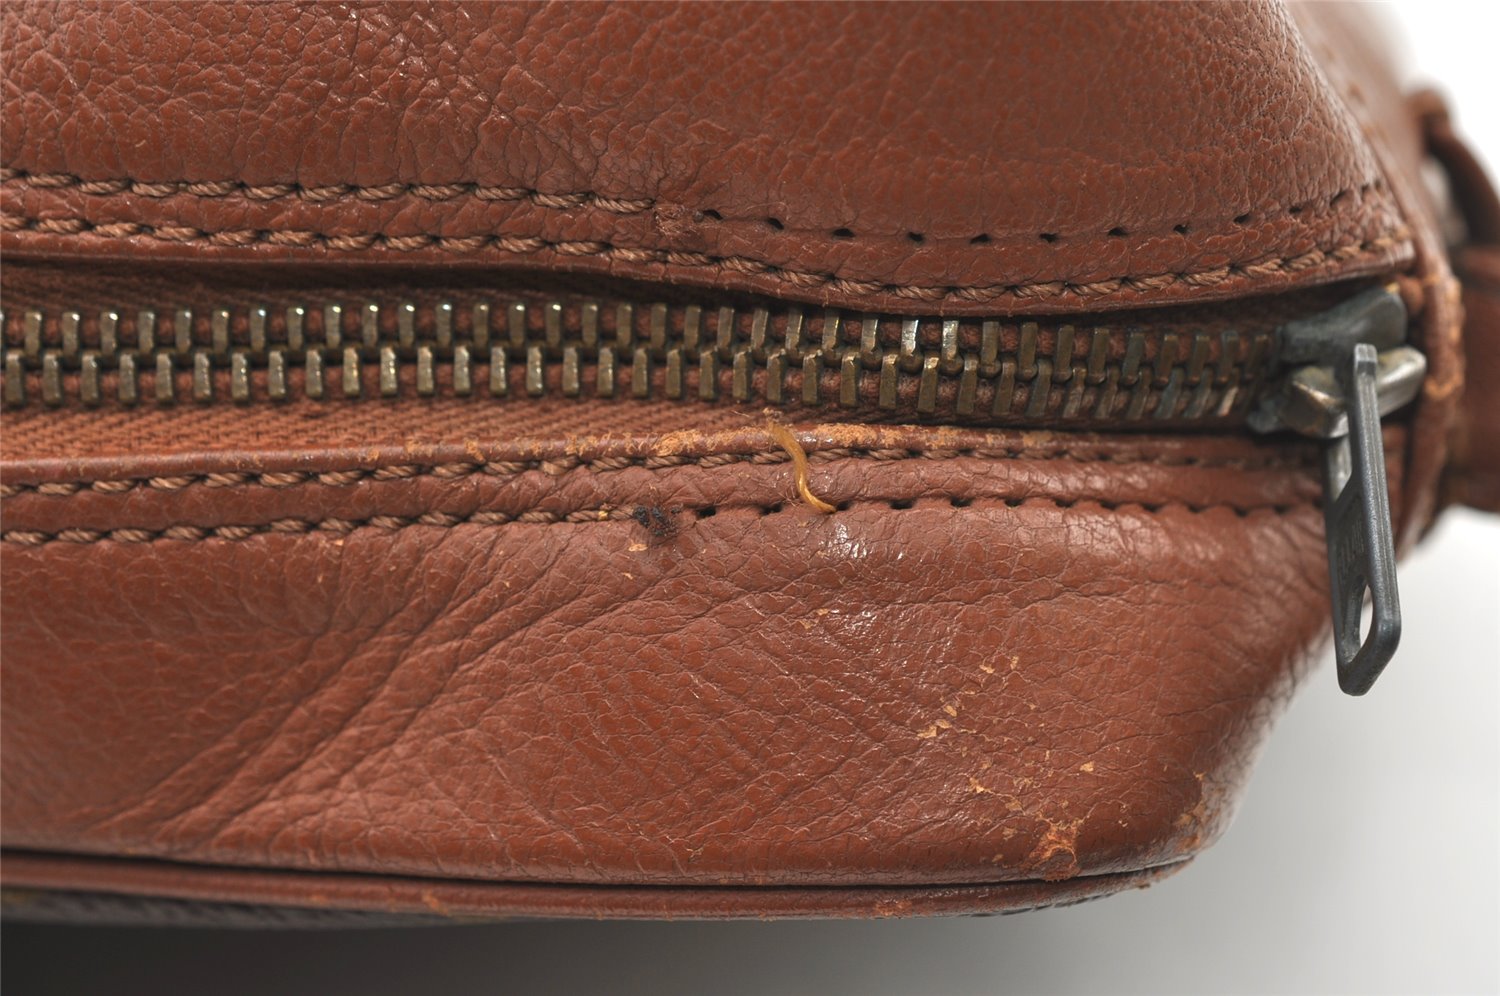 Authentic Louis Vuitton Monogram Sac Bandouliere 30 Shoulder Bag Old Model 0286K